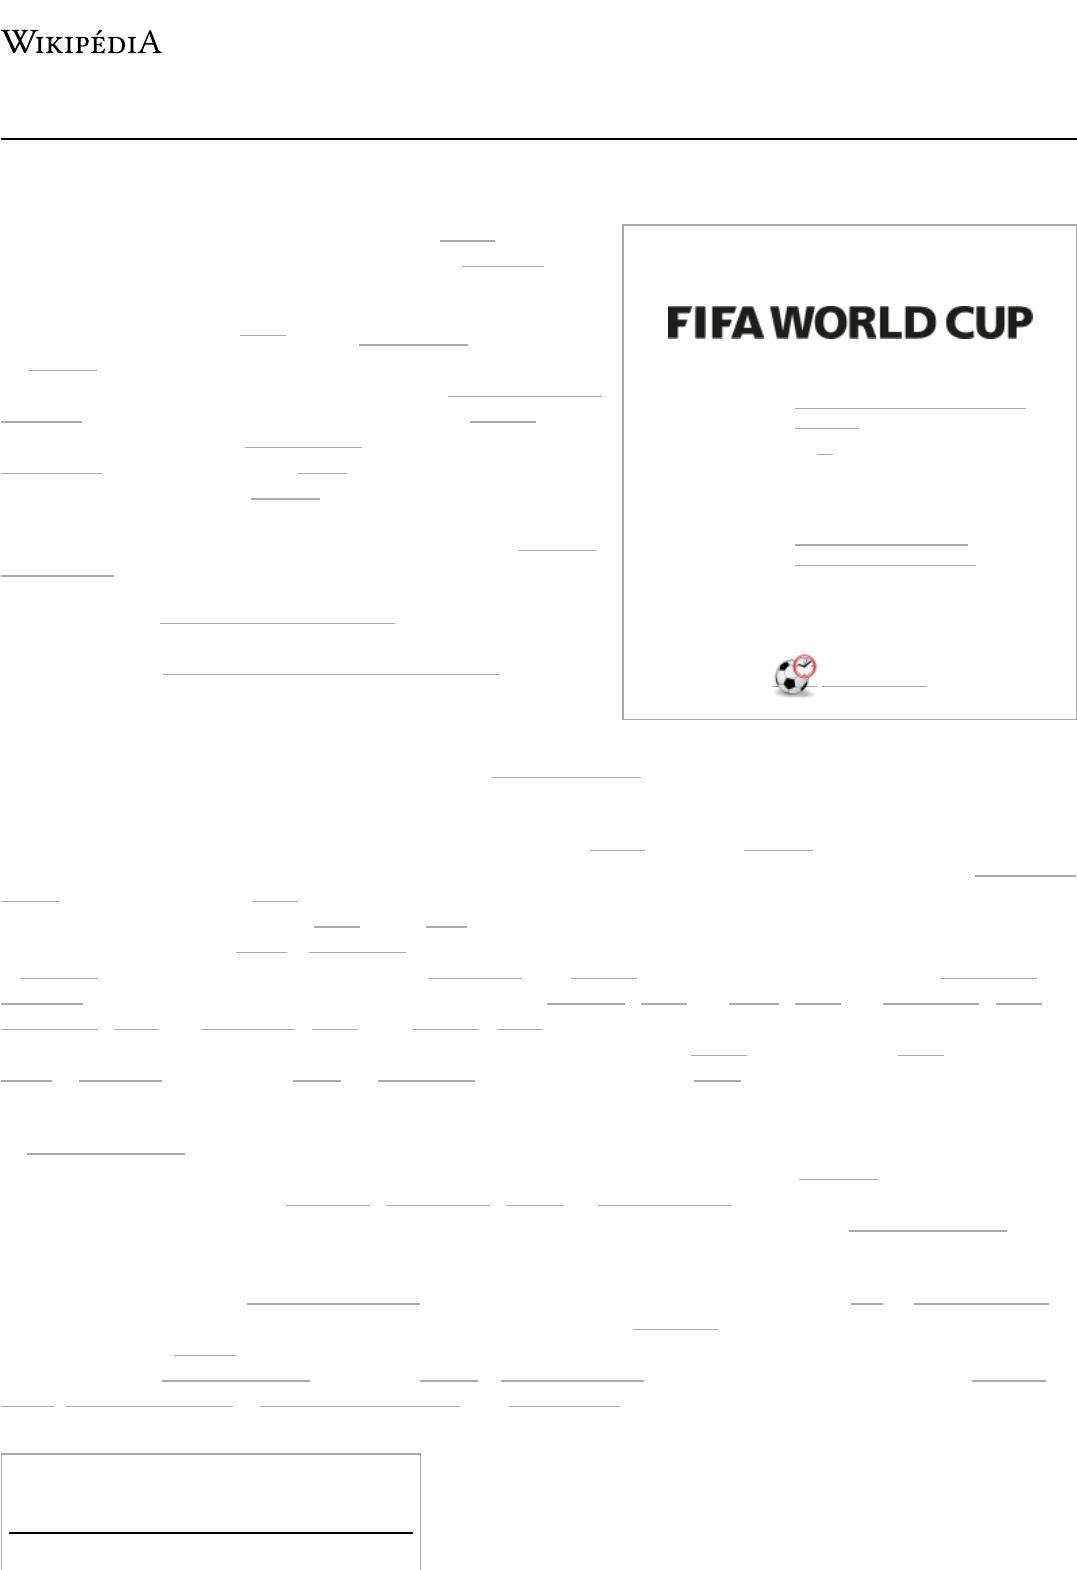 Álbum de figurinhas da Copa do Mundo FIFA de 2018 – Wikipédia, a